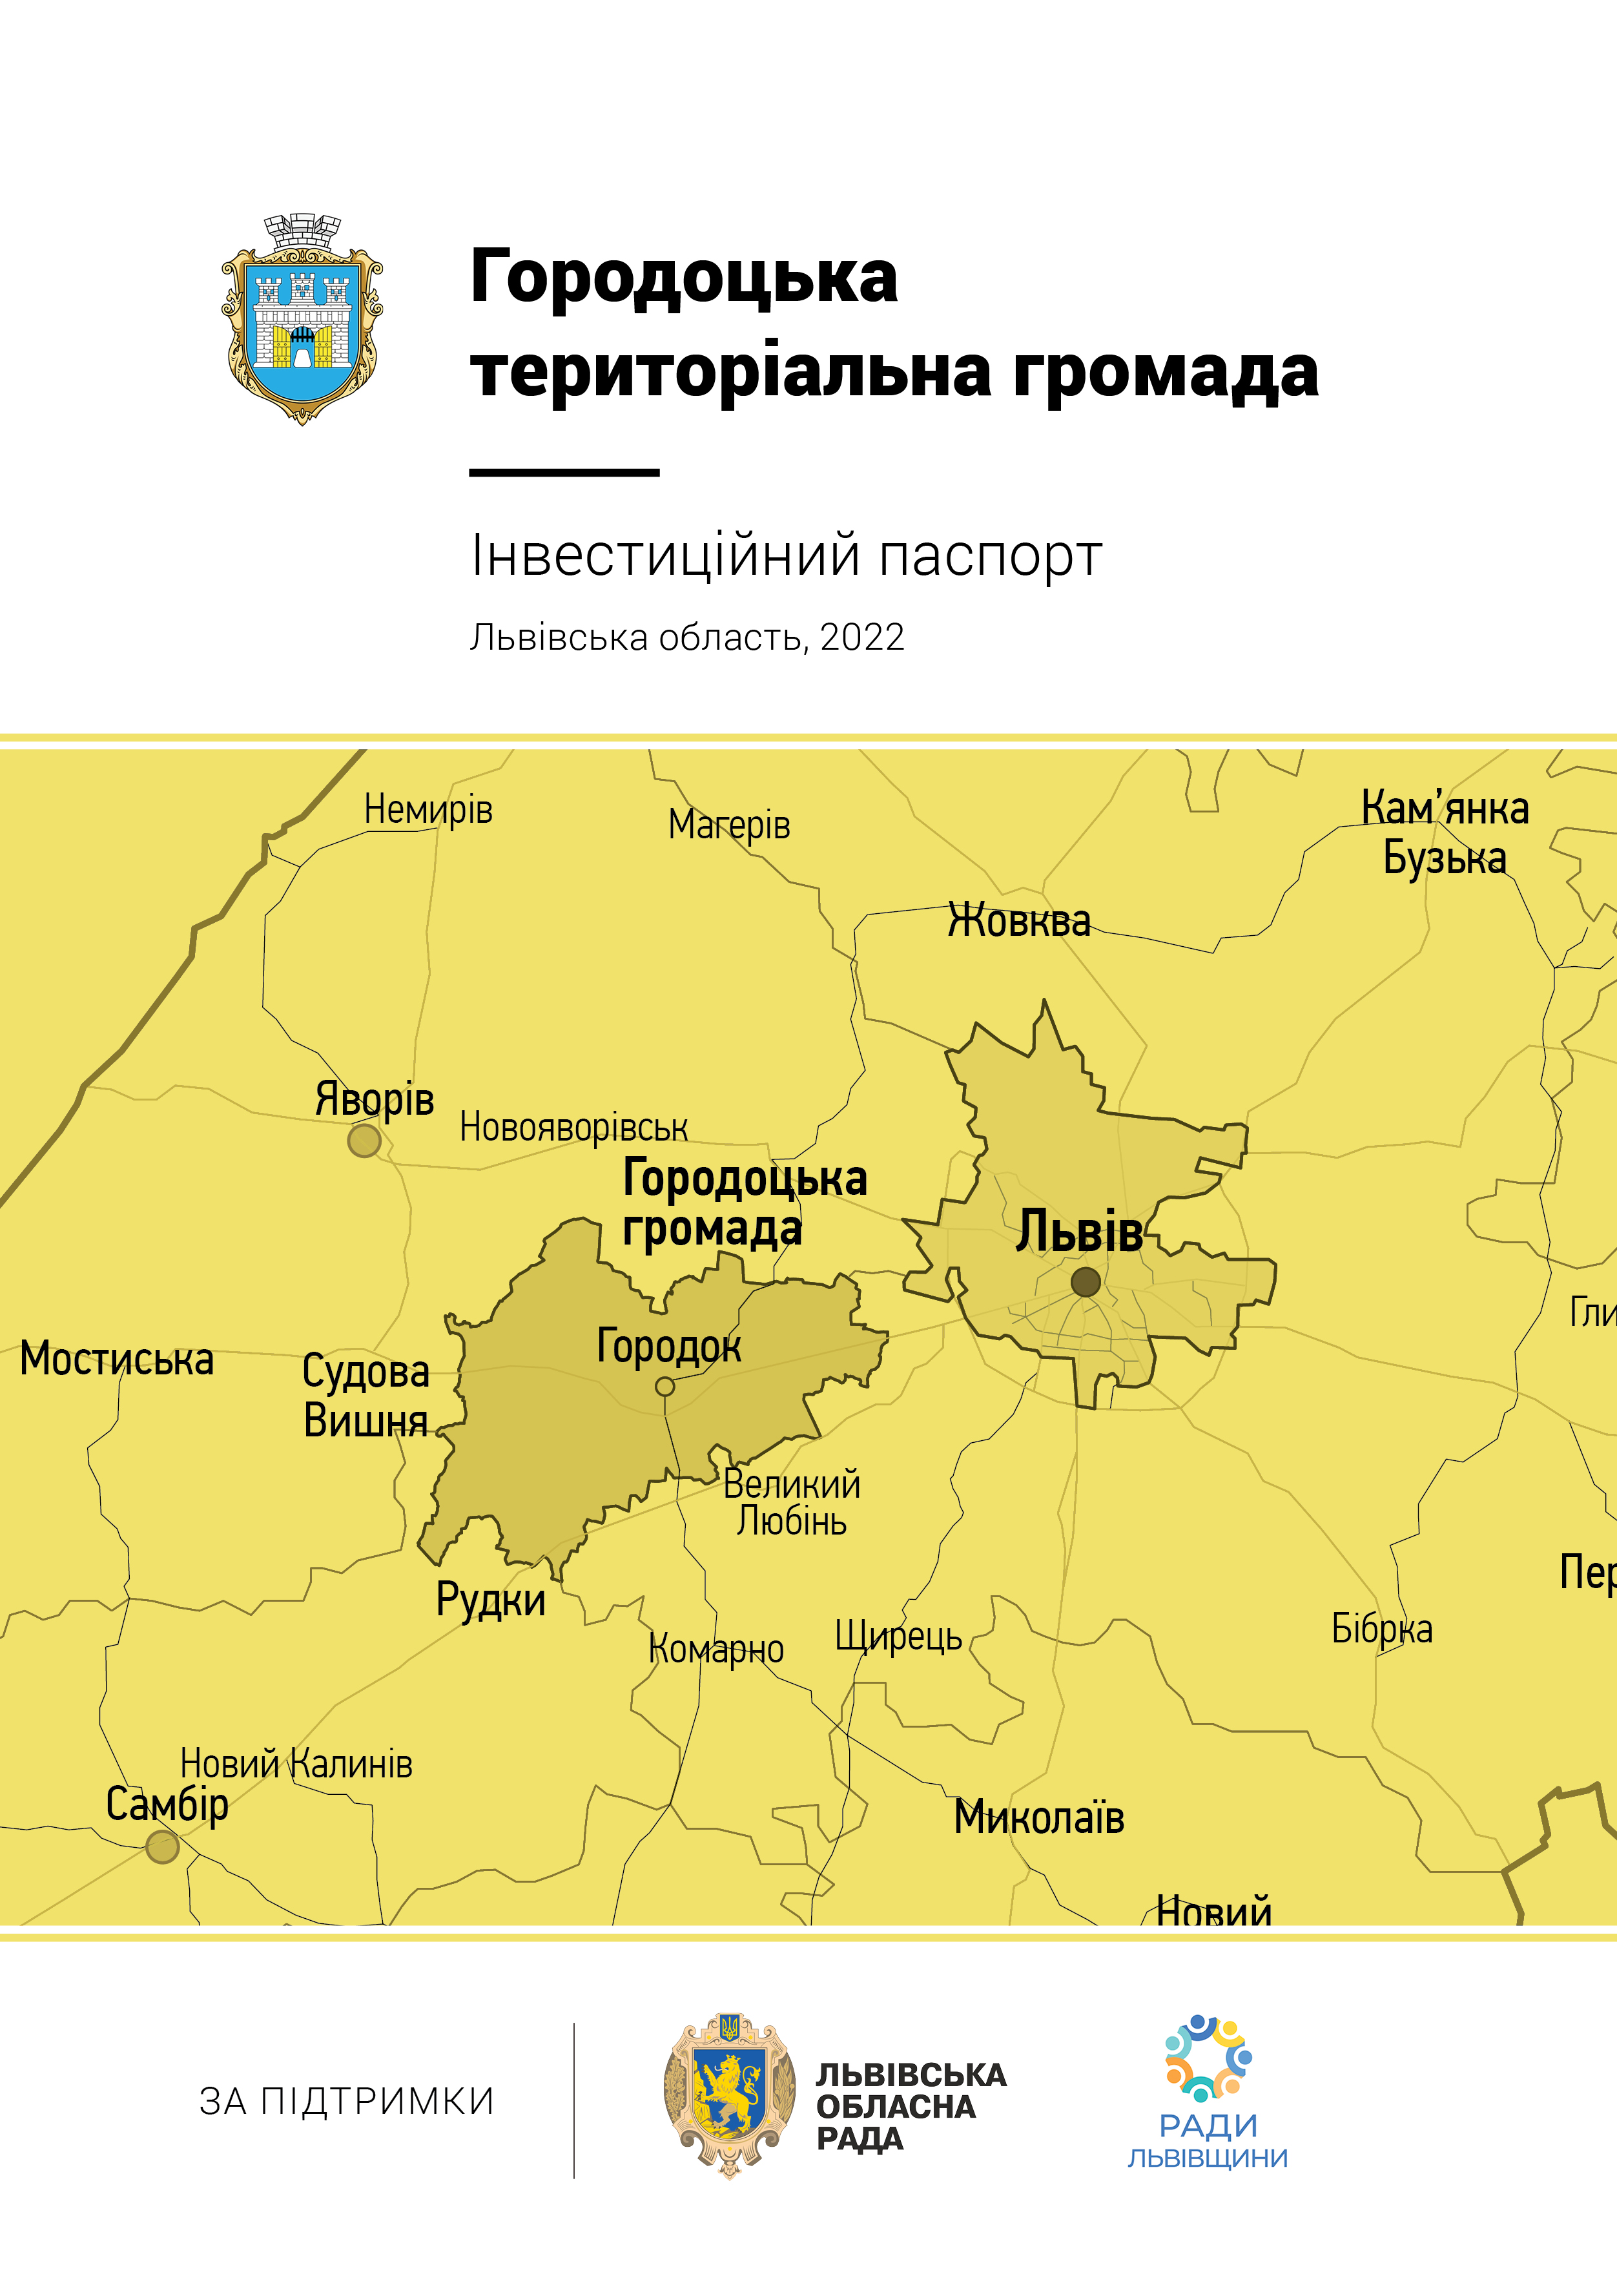 Інвестиційний паспорт Городоцької територіальної громади (2021)